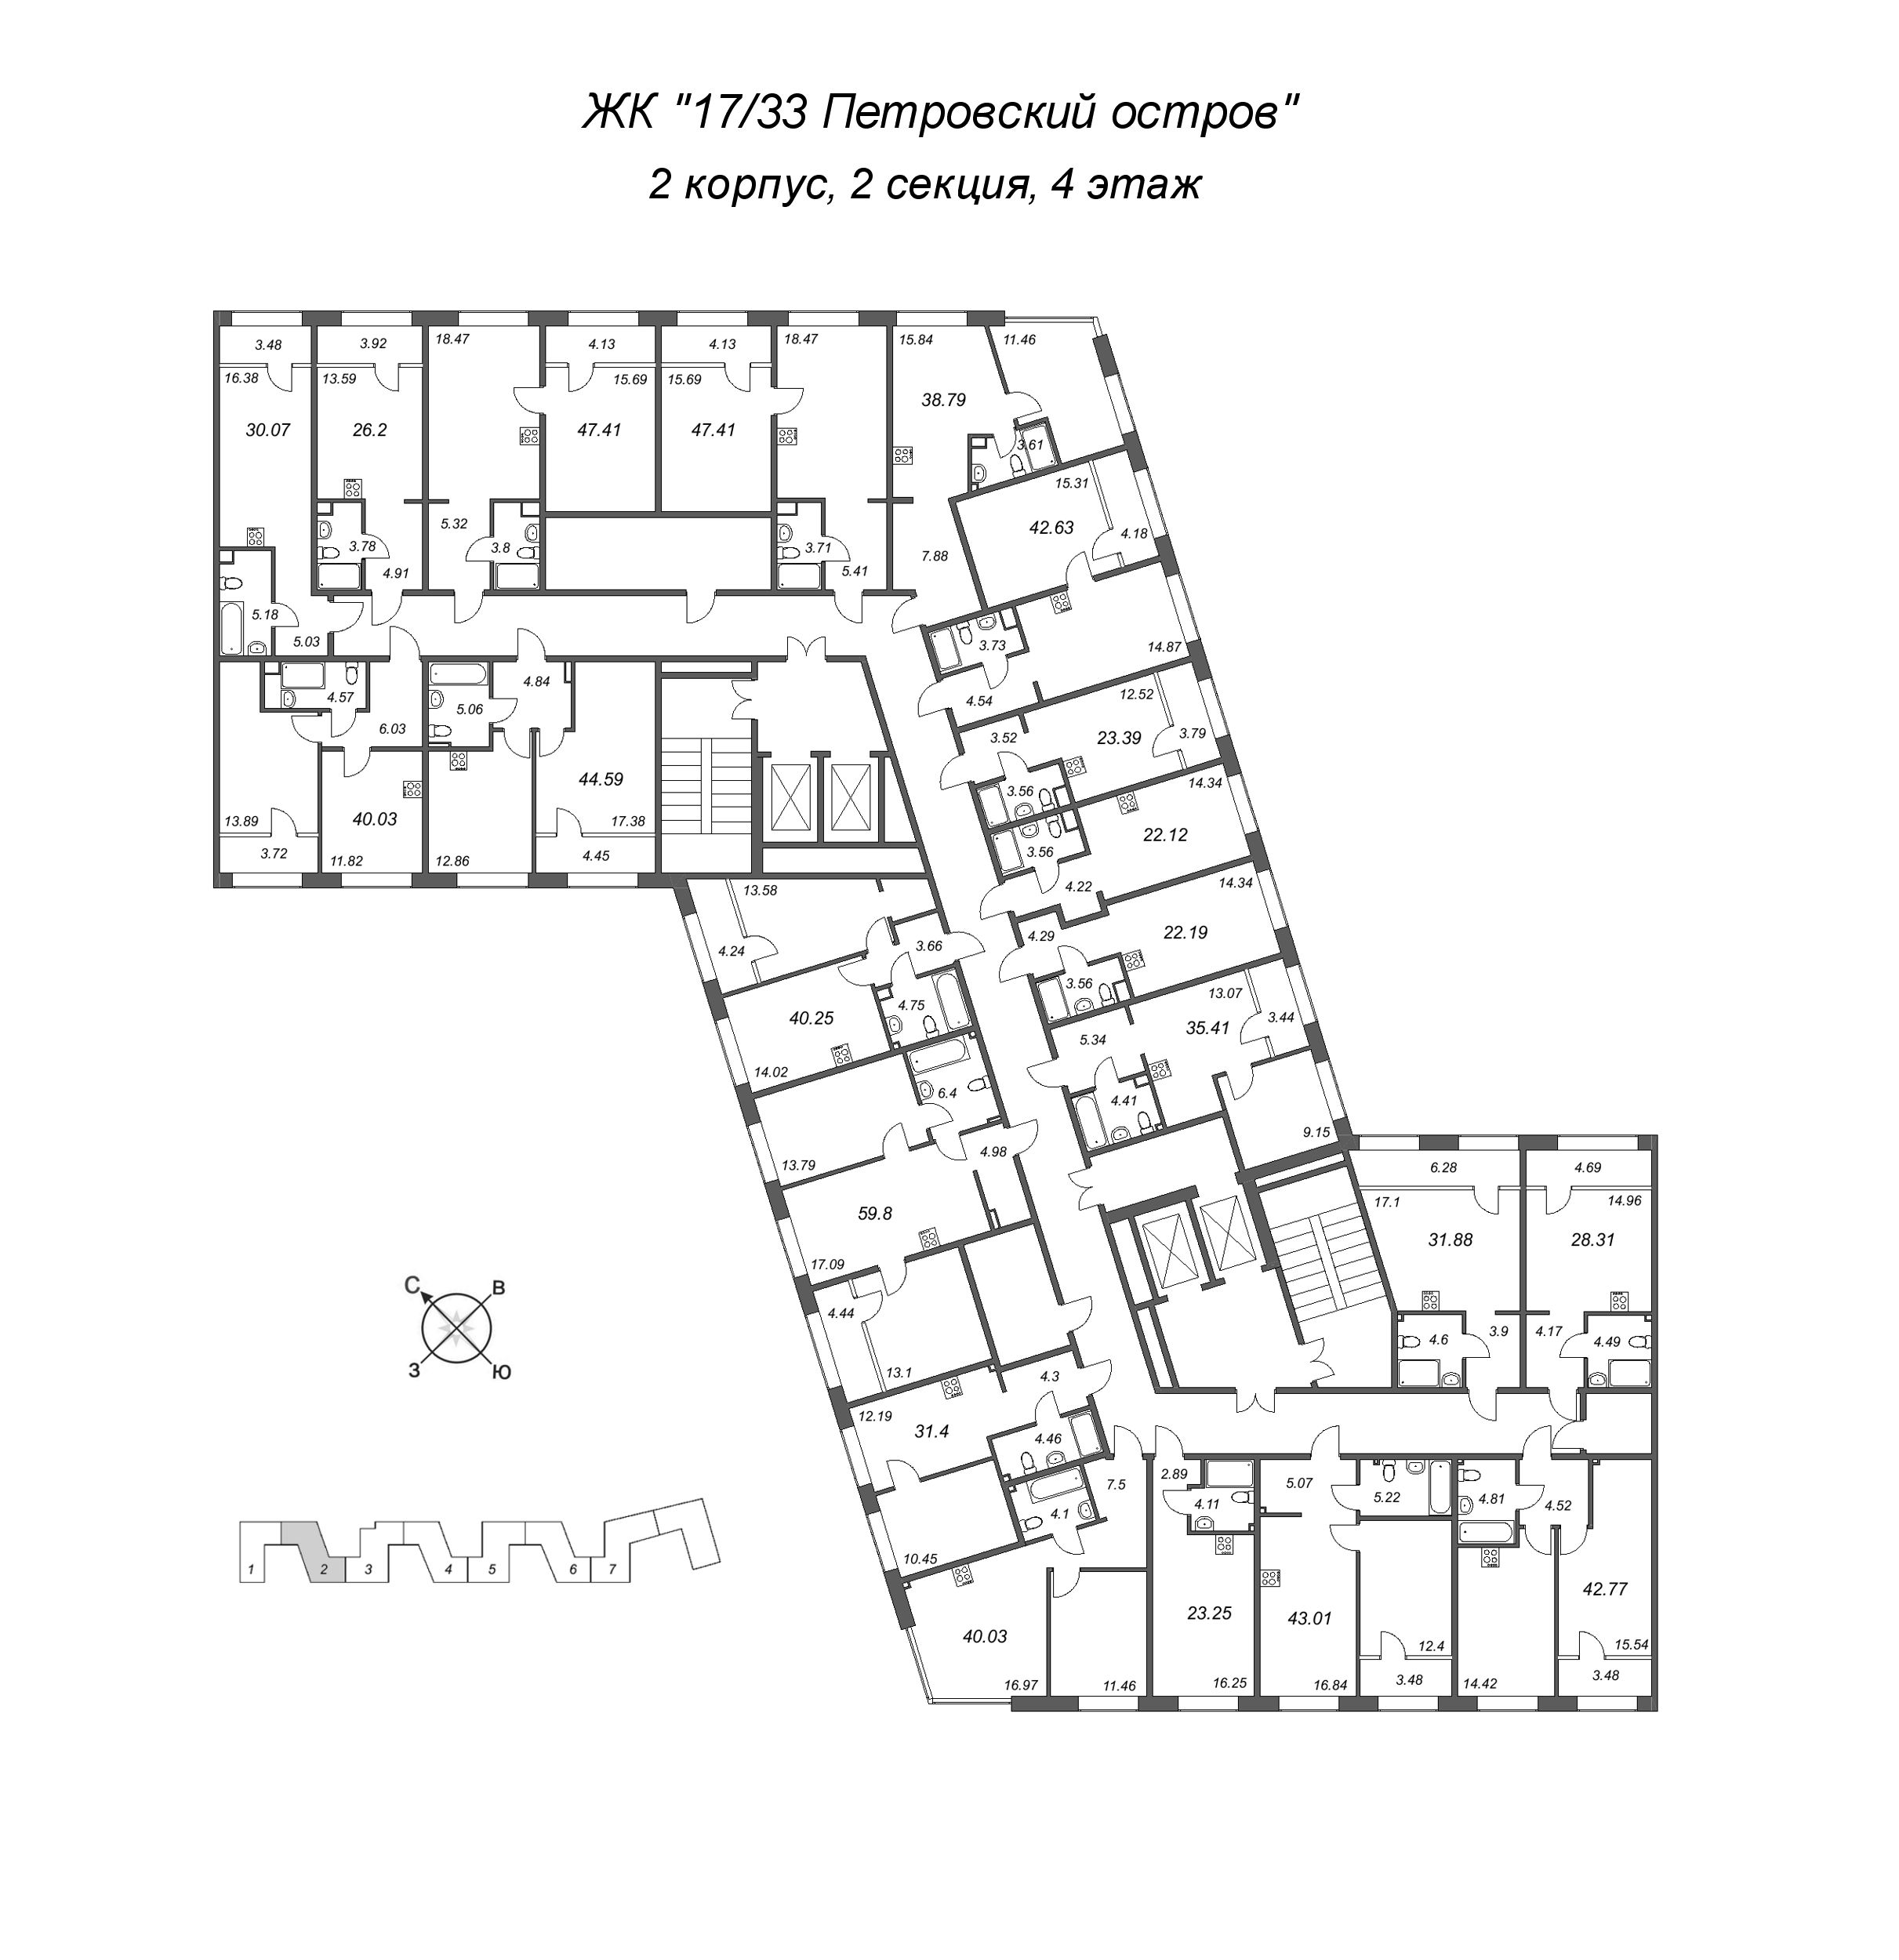 1-комнатная квартира, 44.59 м² в ЖК "17/33 Петровский остров" - планировка этажа